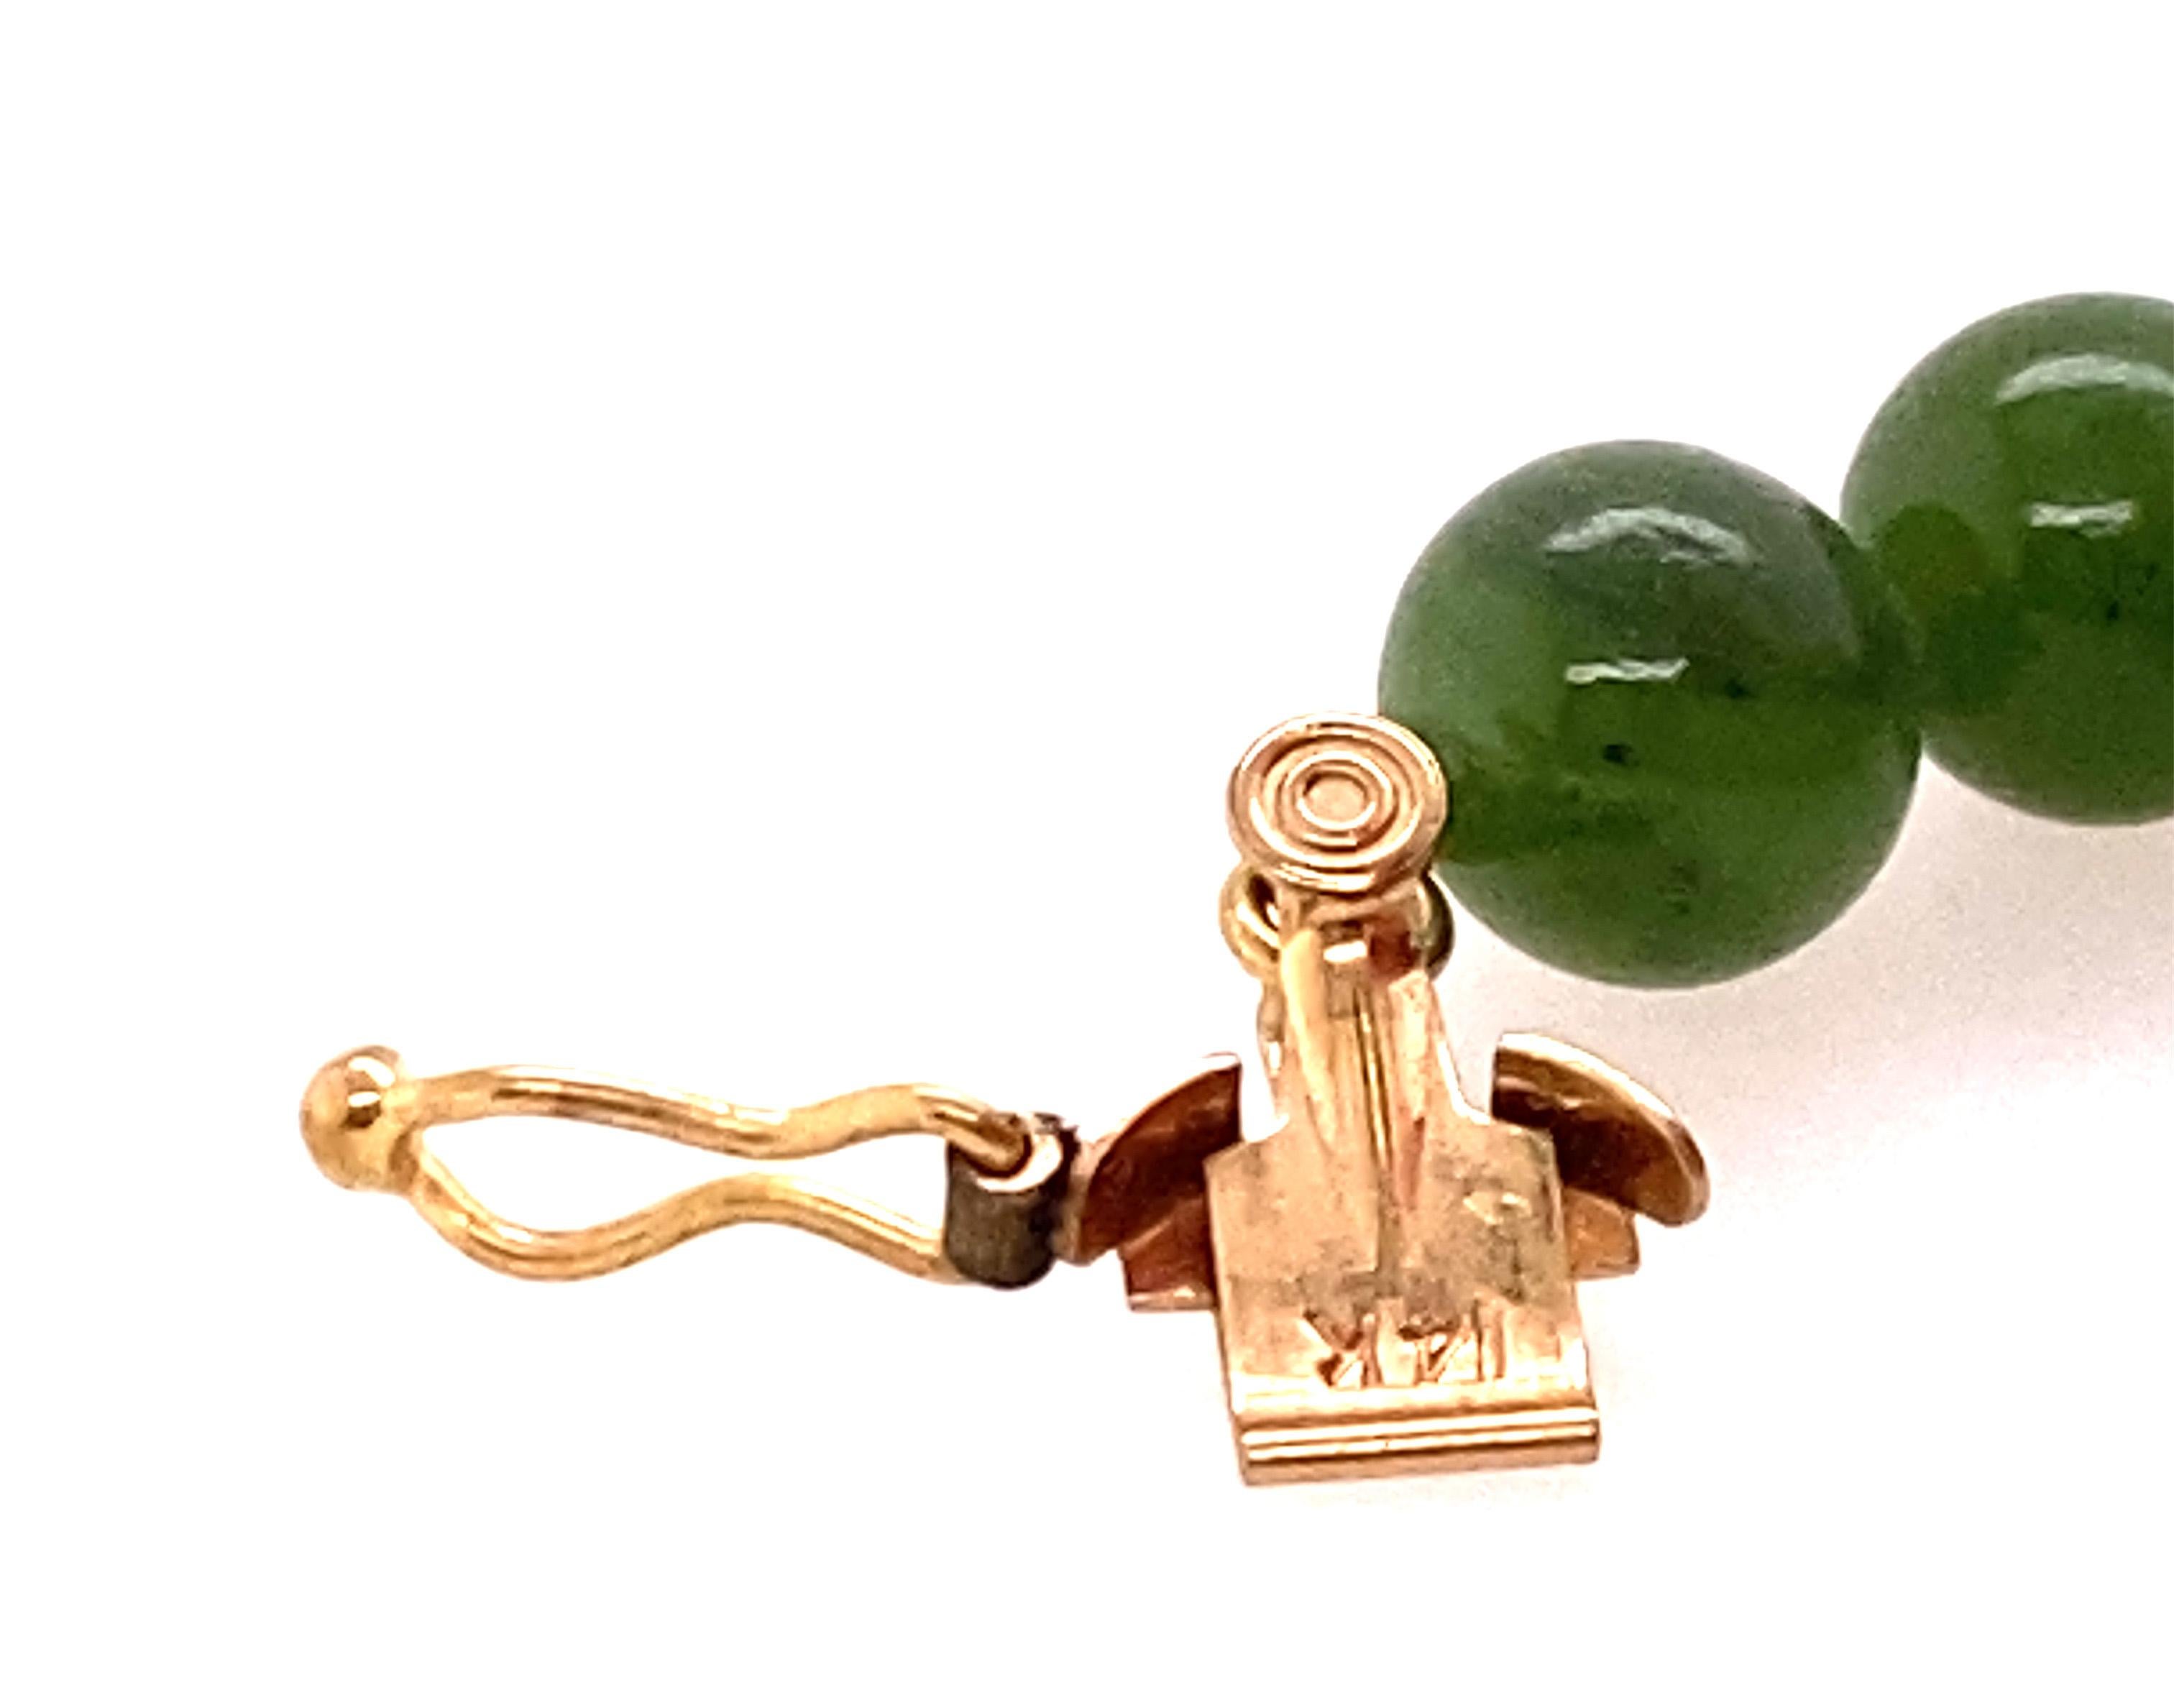 jade necklace vintage